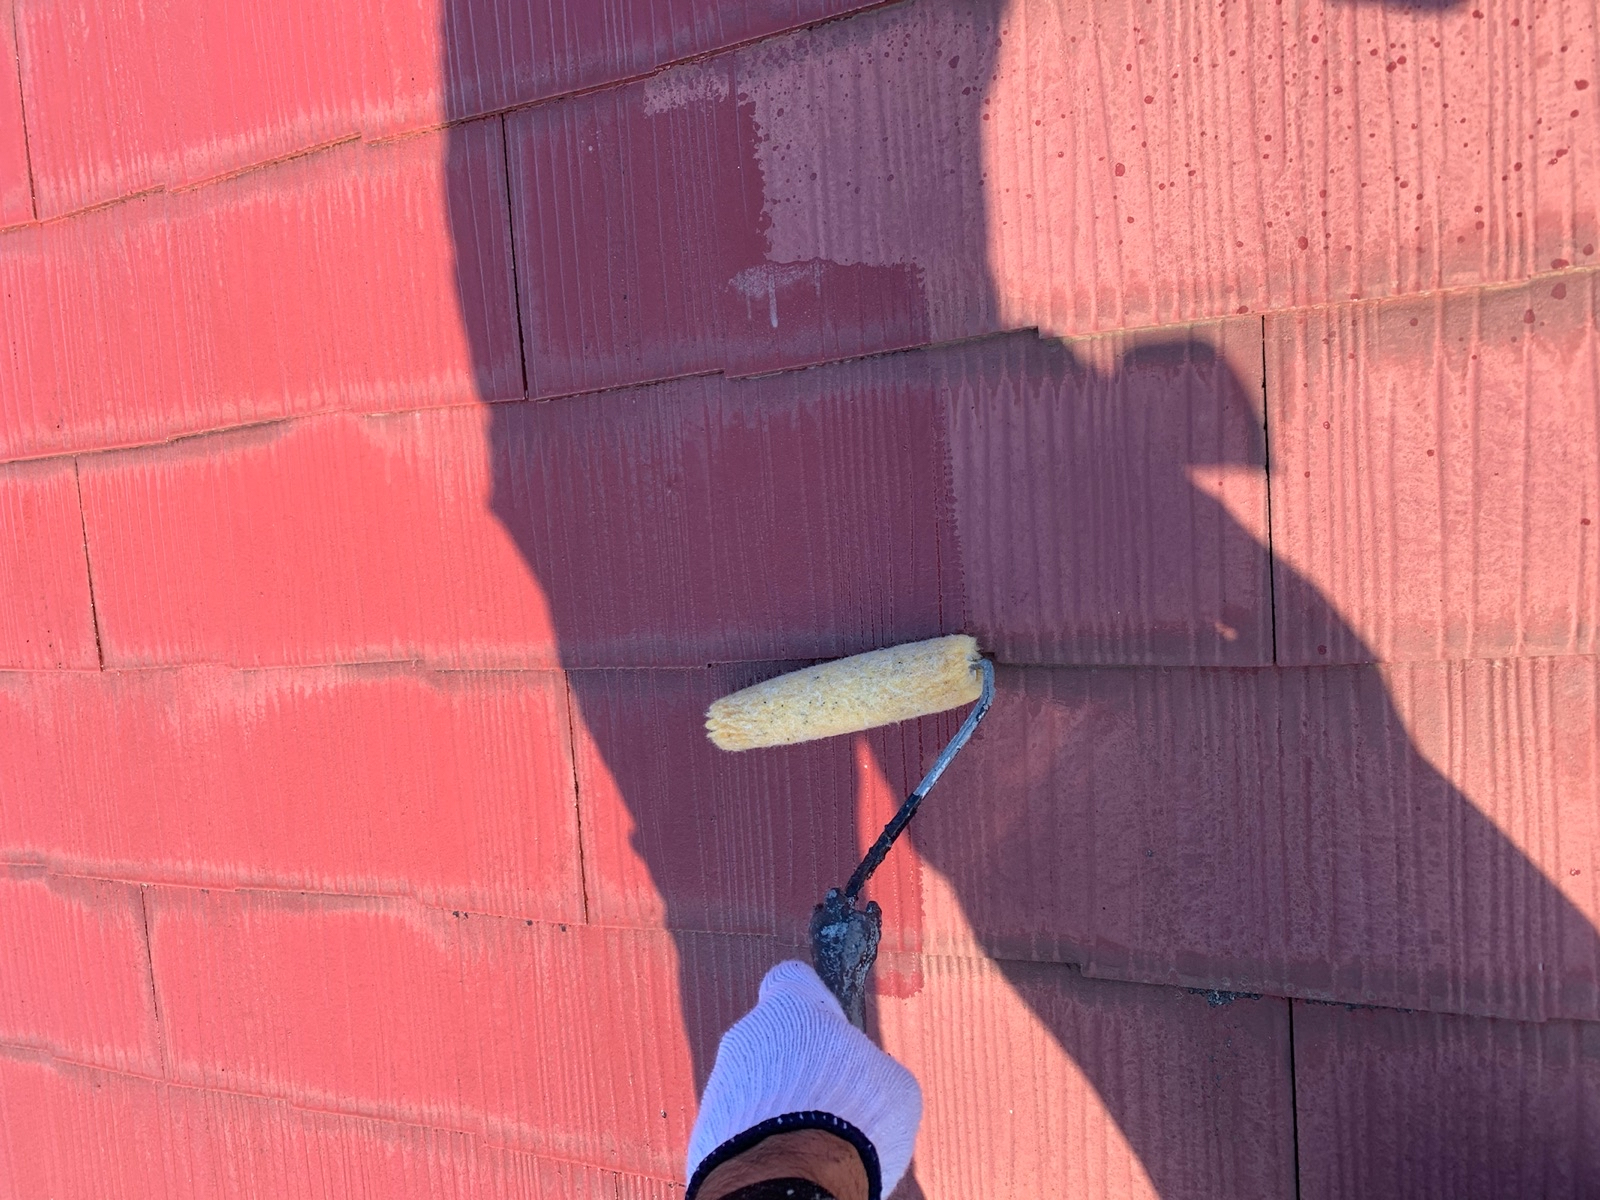 スレート屋根の塗装で使うタスペーサーとはどんな部材？